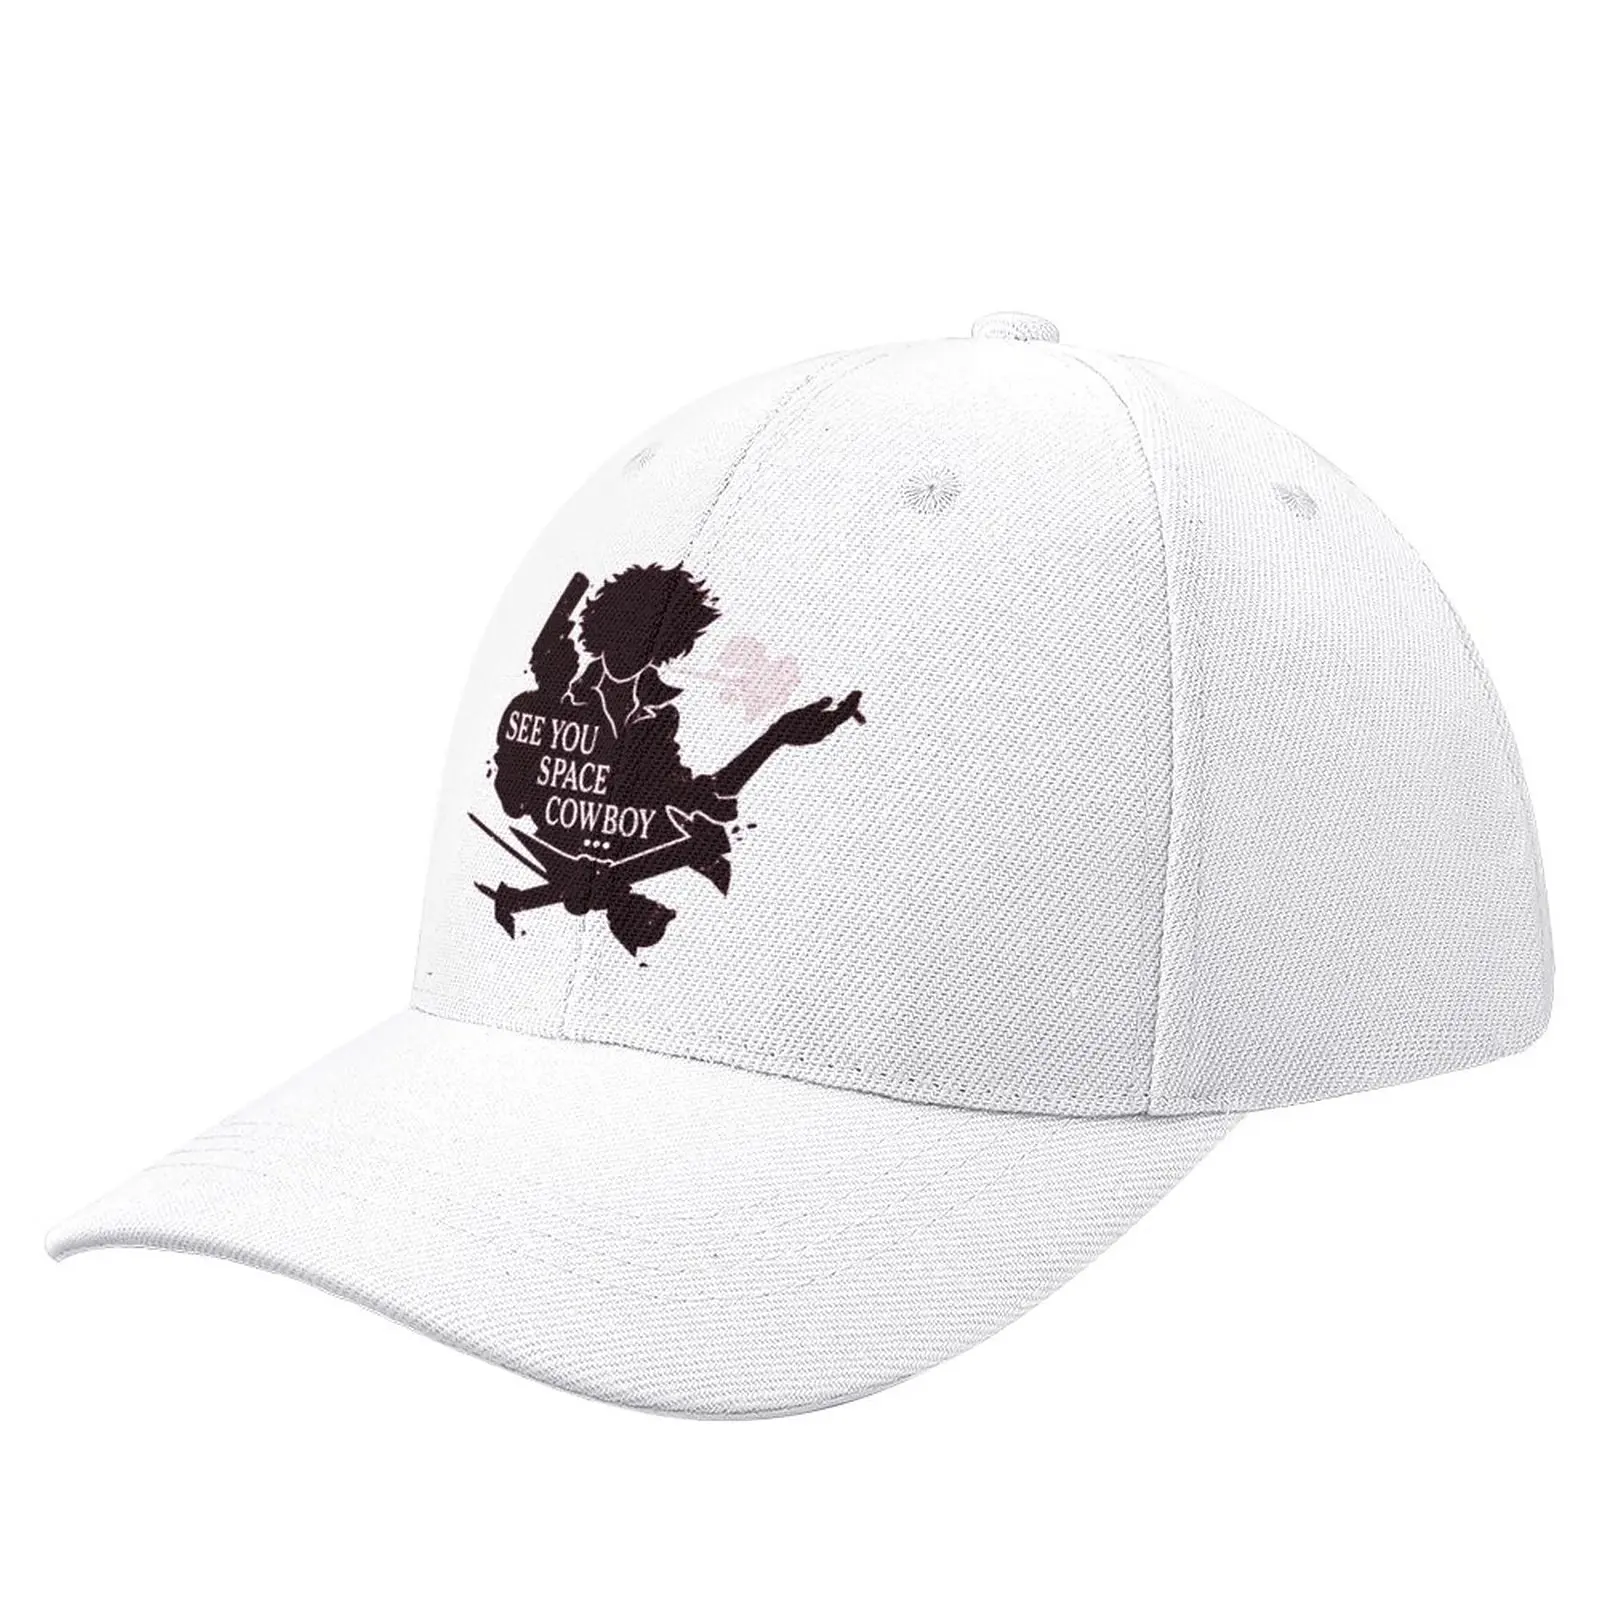 

See you space cowboy Baseball Cap Snapback Cap Visor Fishing Caps Thermal Visor Men'S Hat Women'S